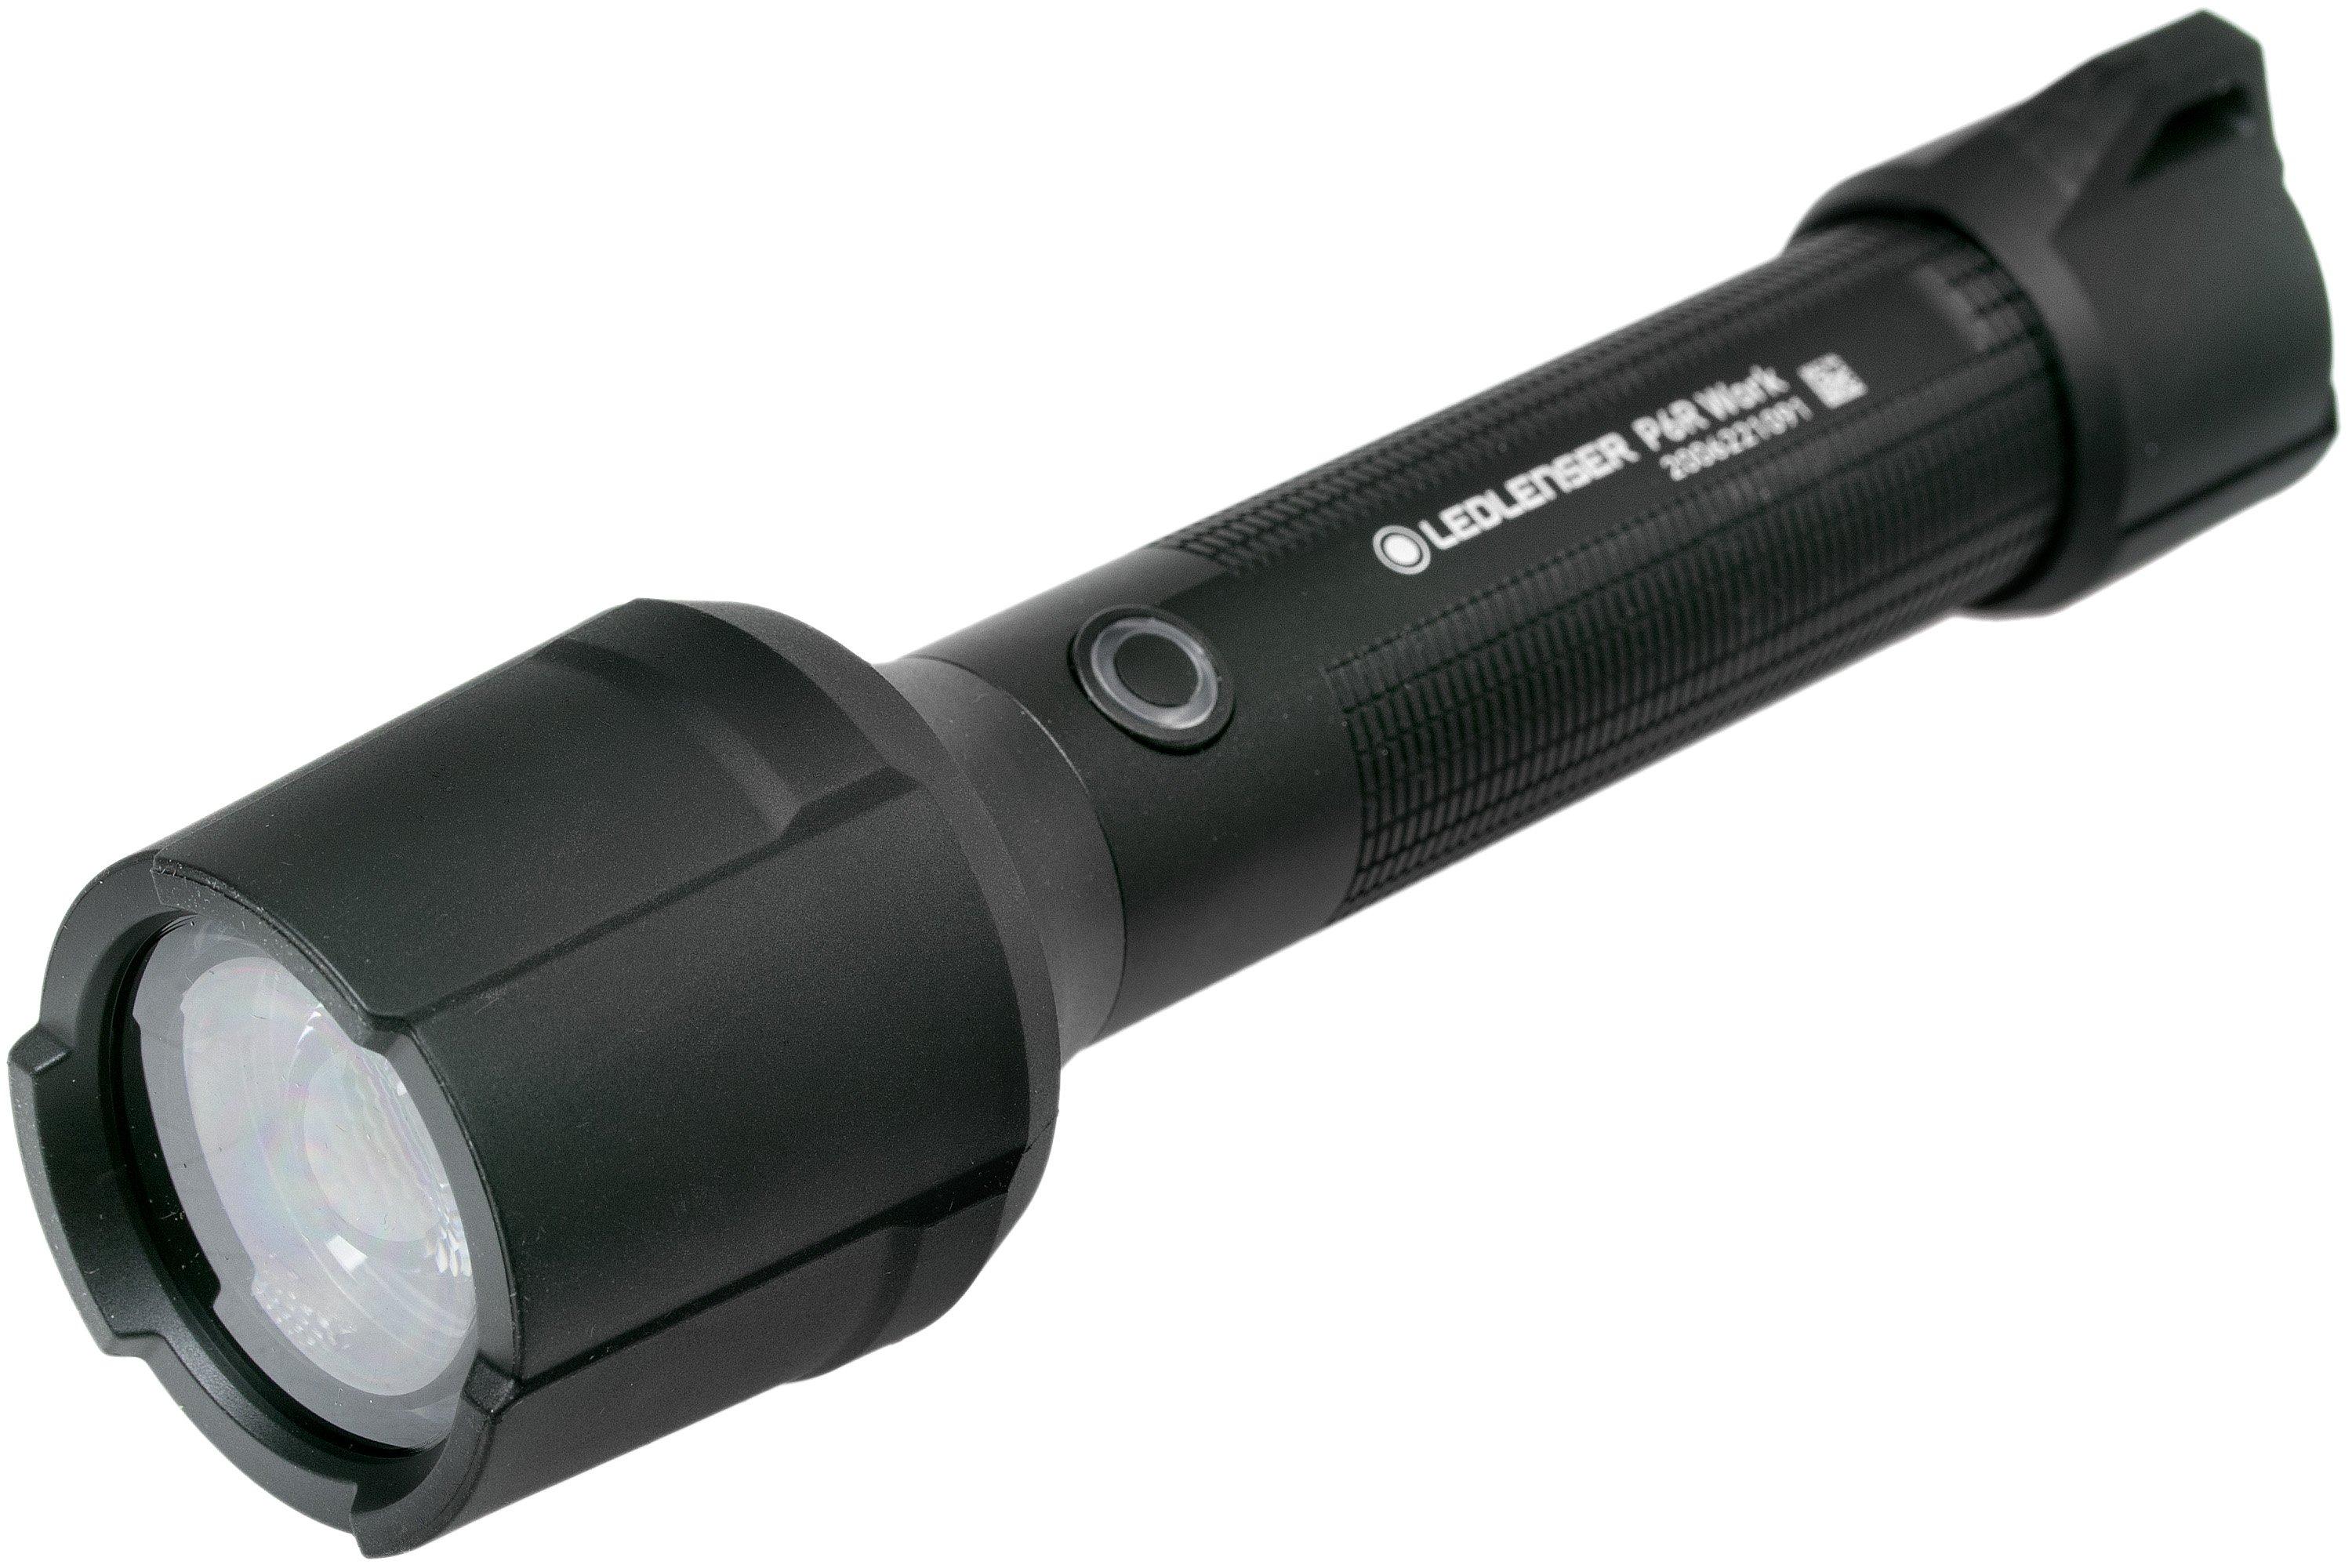 Ledlenser P6R Work rechargeable flashlight, 850 lumens